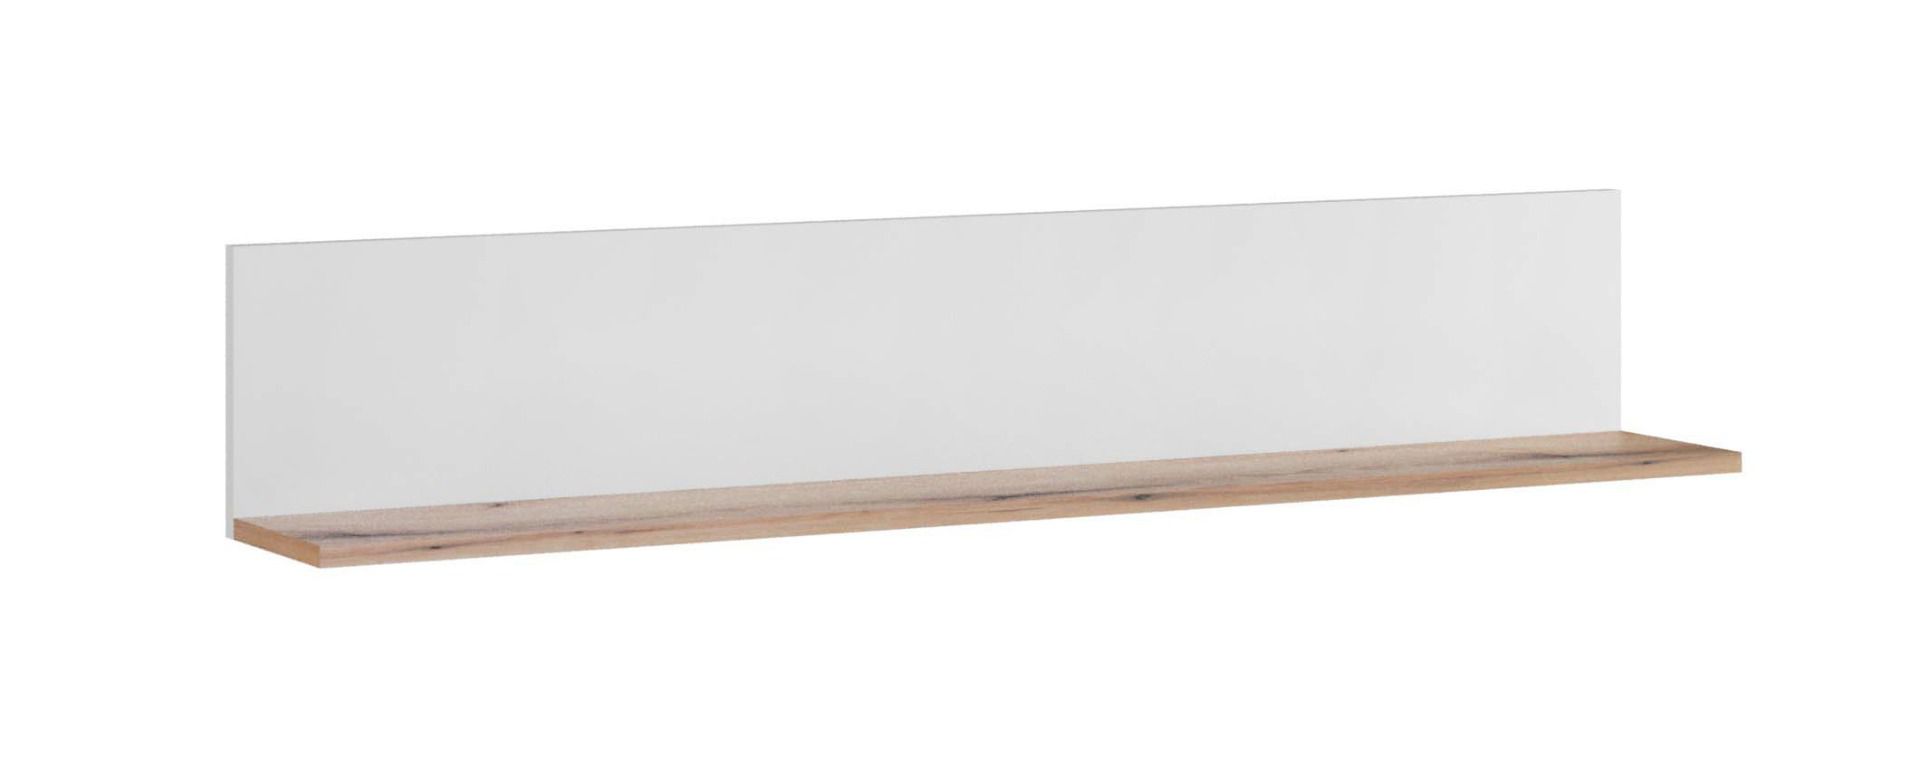 Hangplank / wandplank Sisamon 03, kleur: Artisan eik / wit - Afmetingen: 24 x 137 x 21 cm (H x B x D)